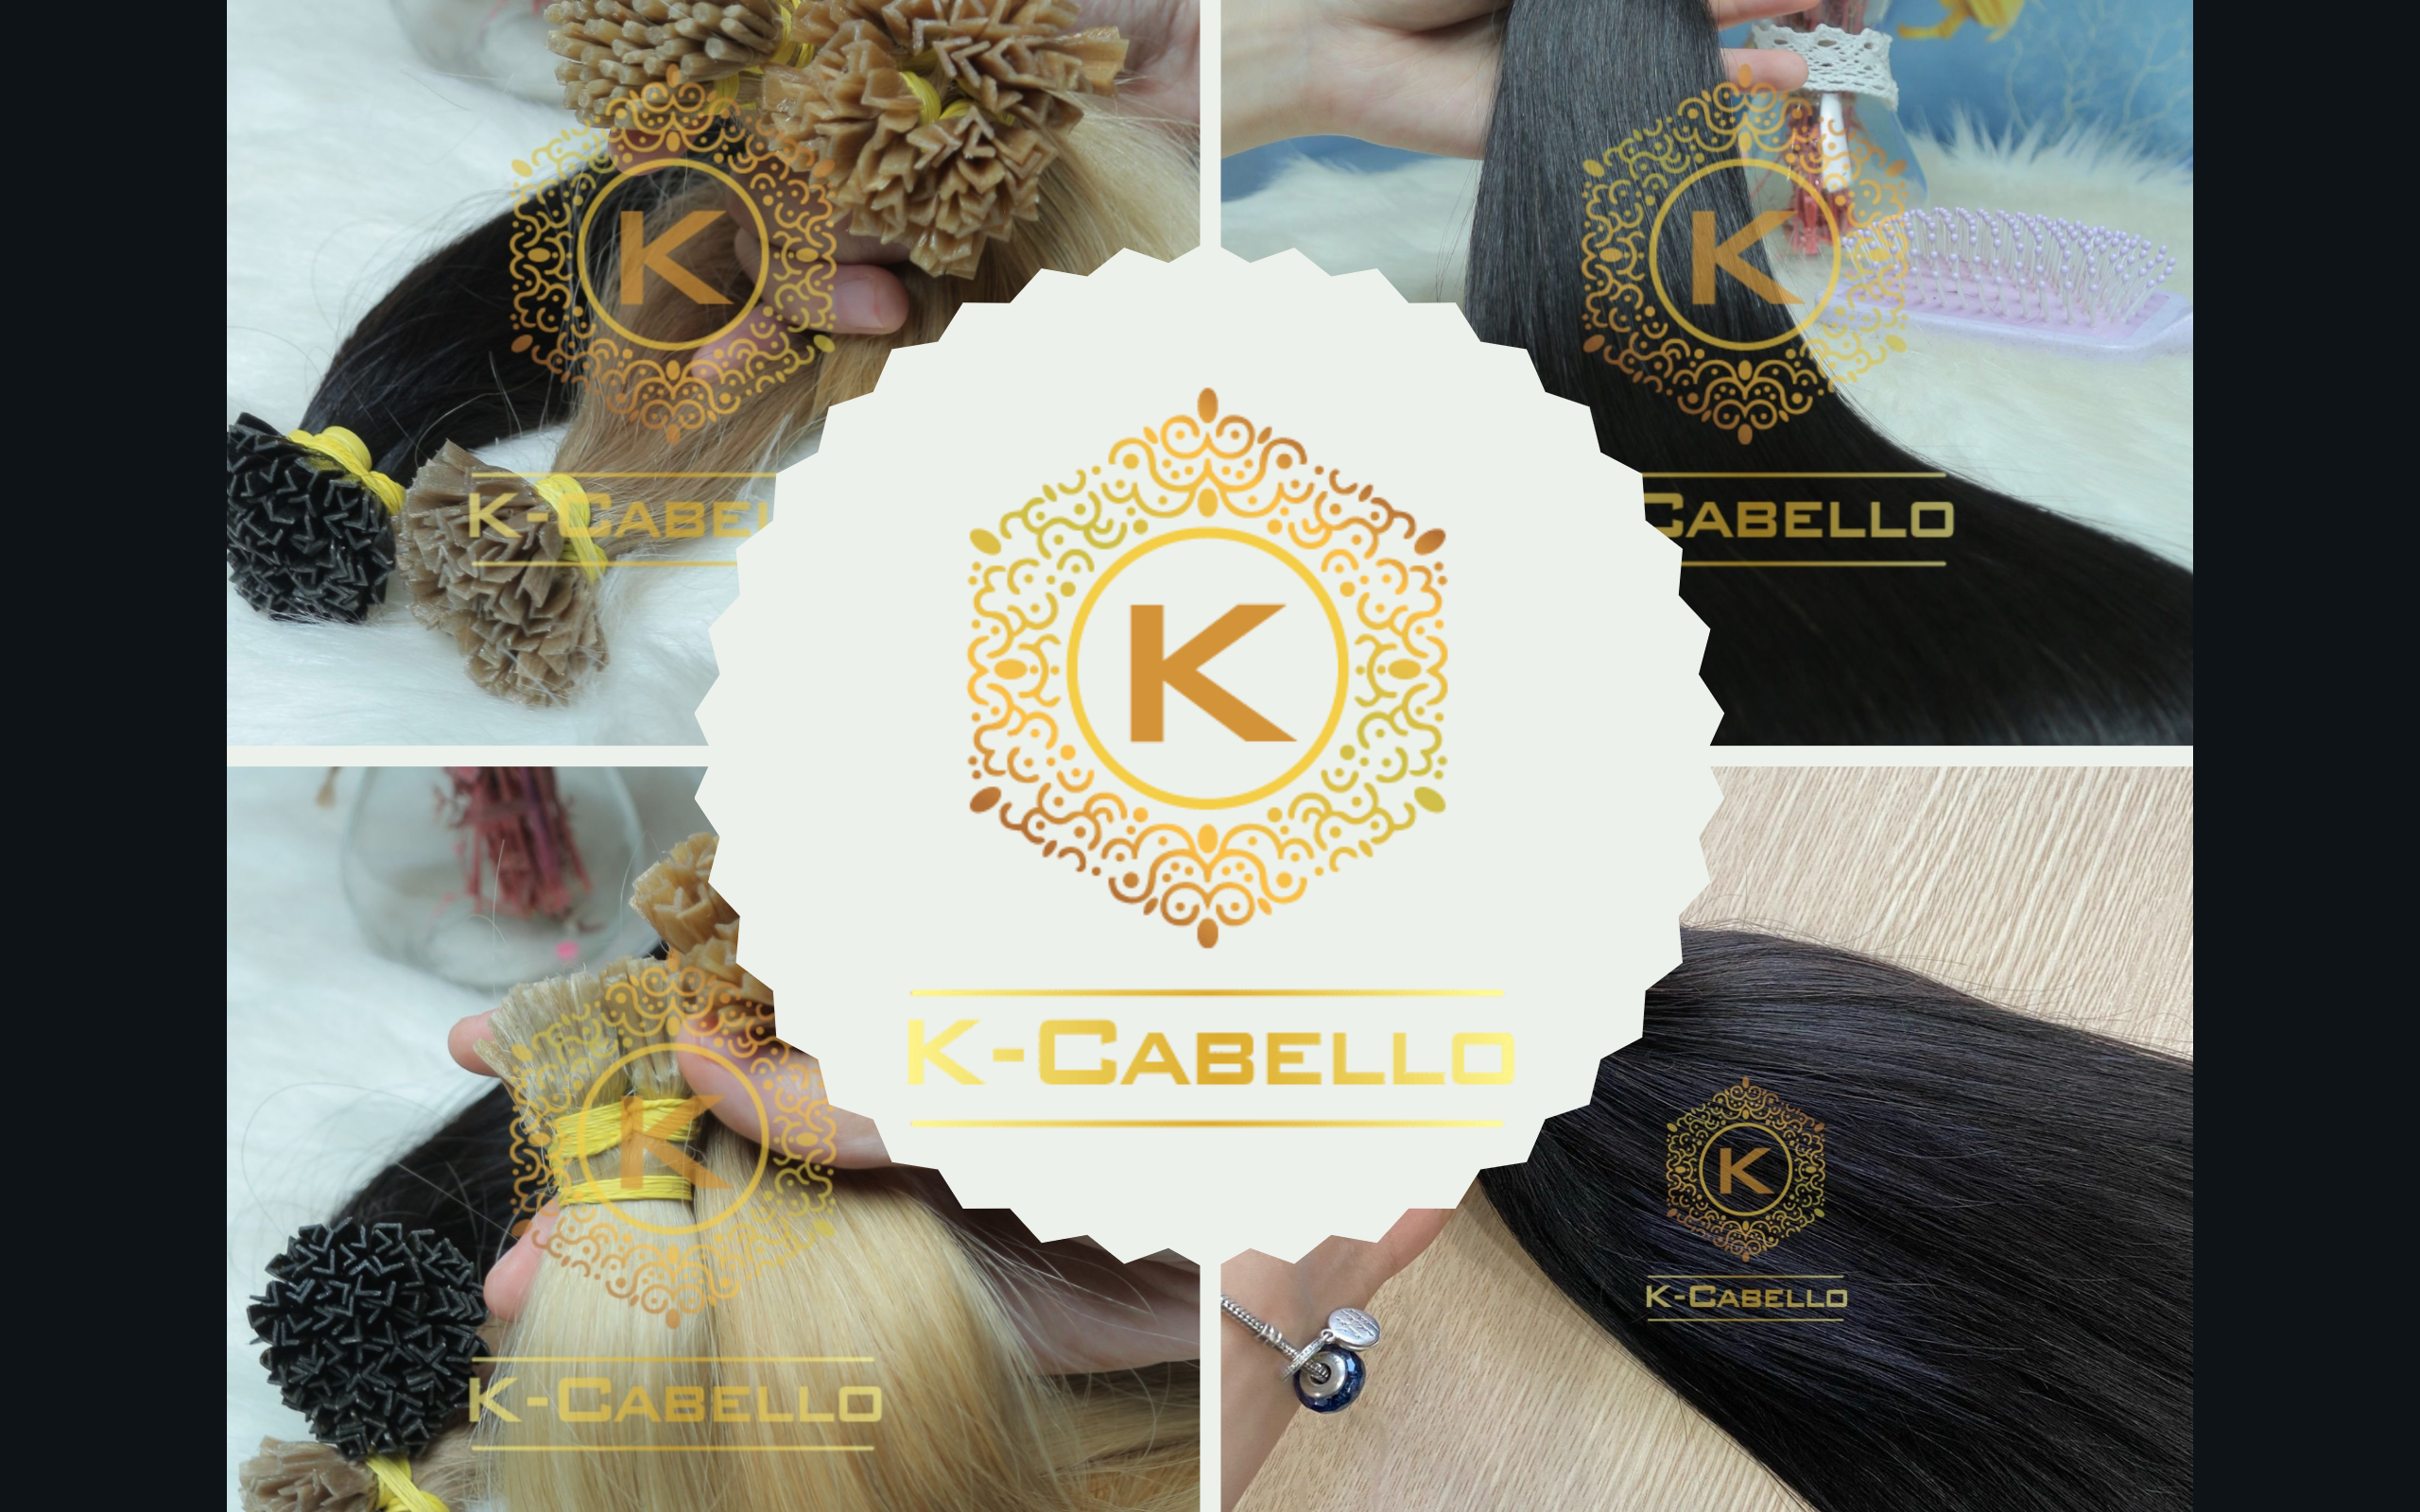 Extensiones-adhesivas-de-la-fabrica-de-extensiones-de-cabello-K-Cabello